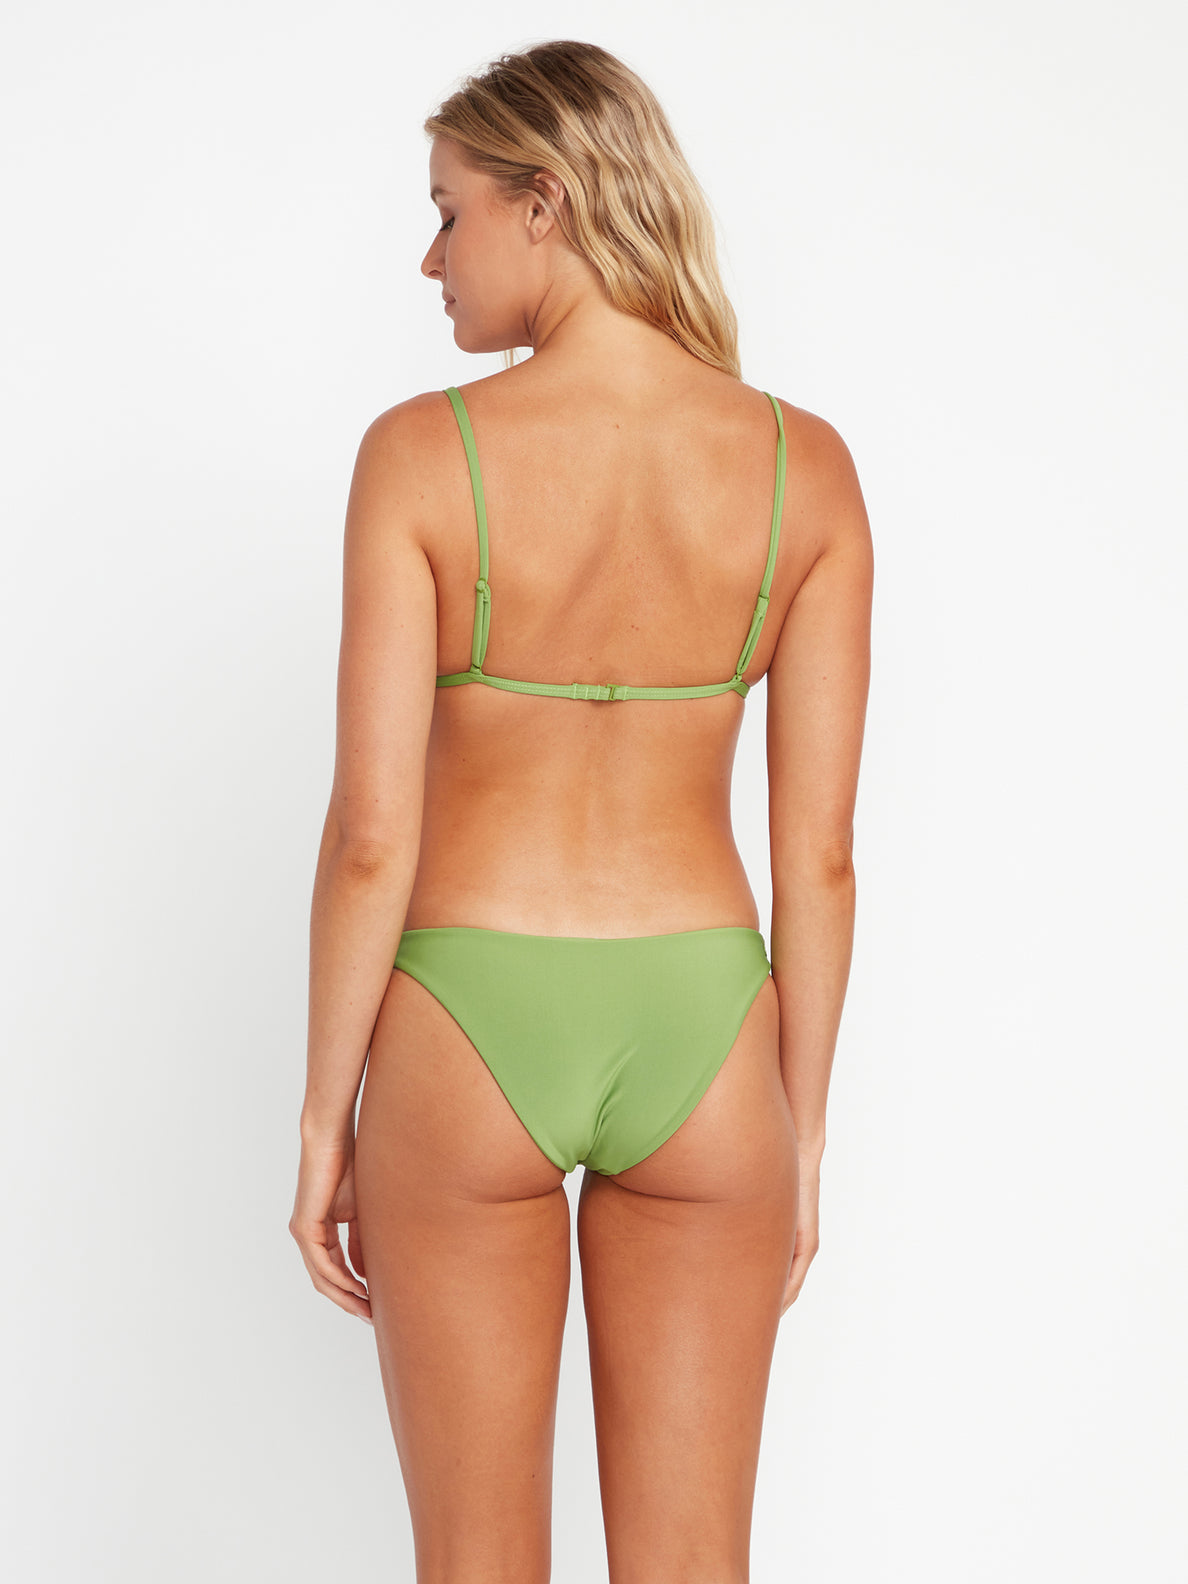 Simply Seamless Triangle Bikini Top - Apple